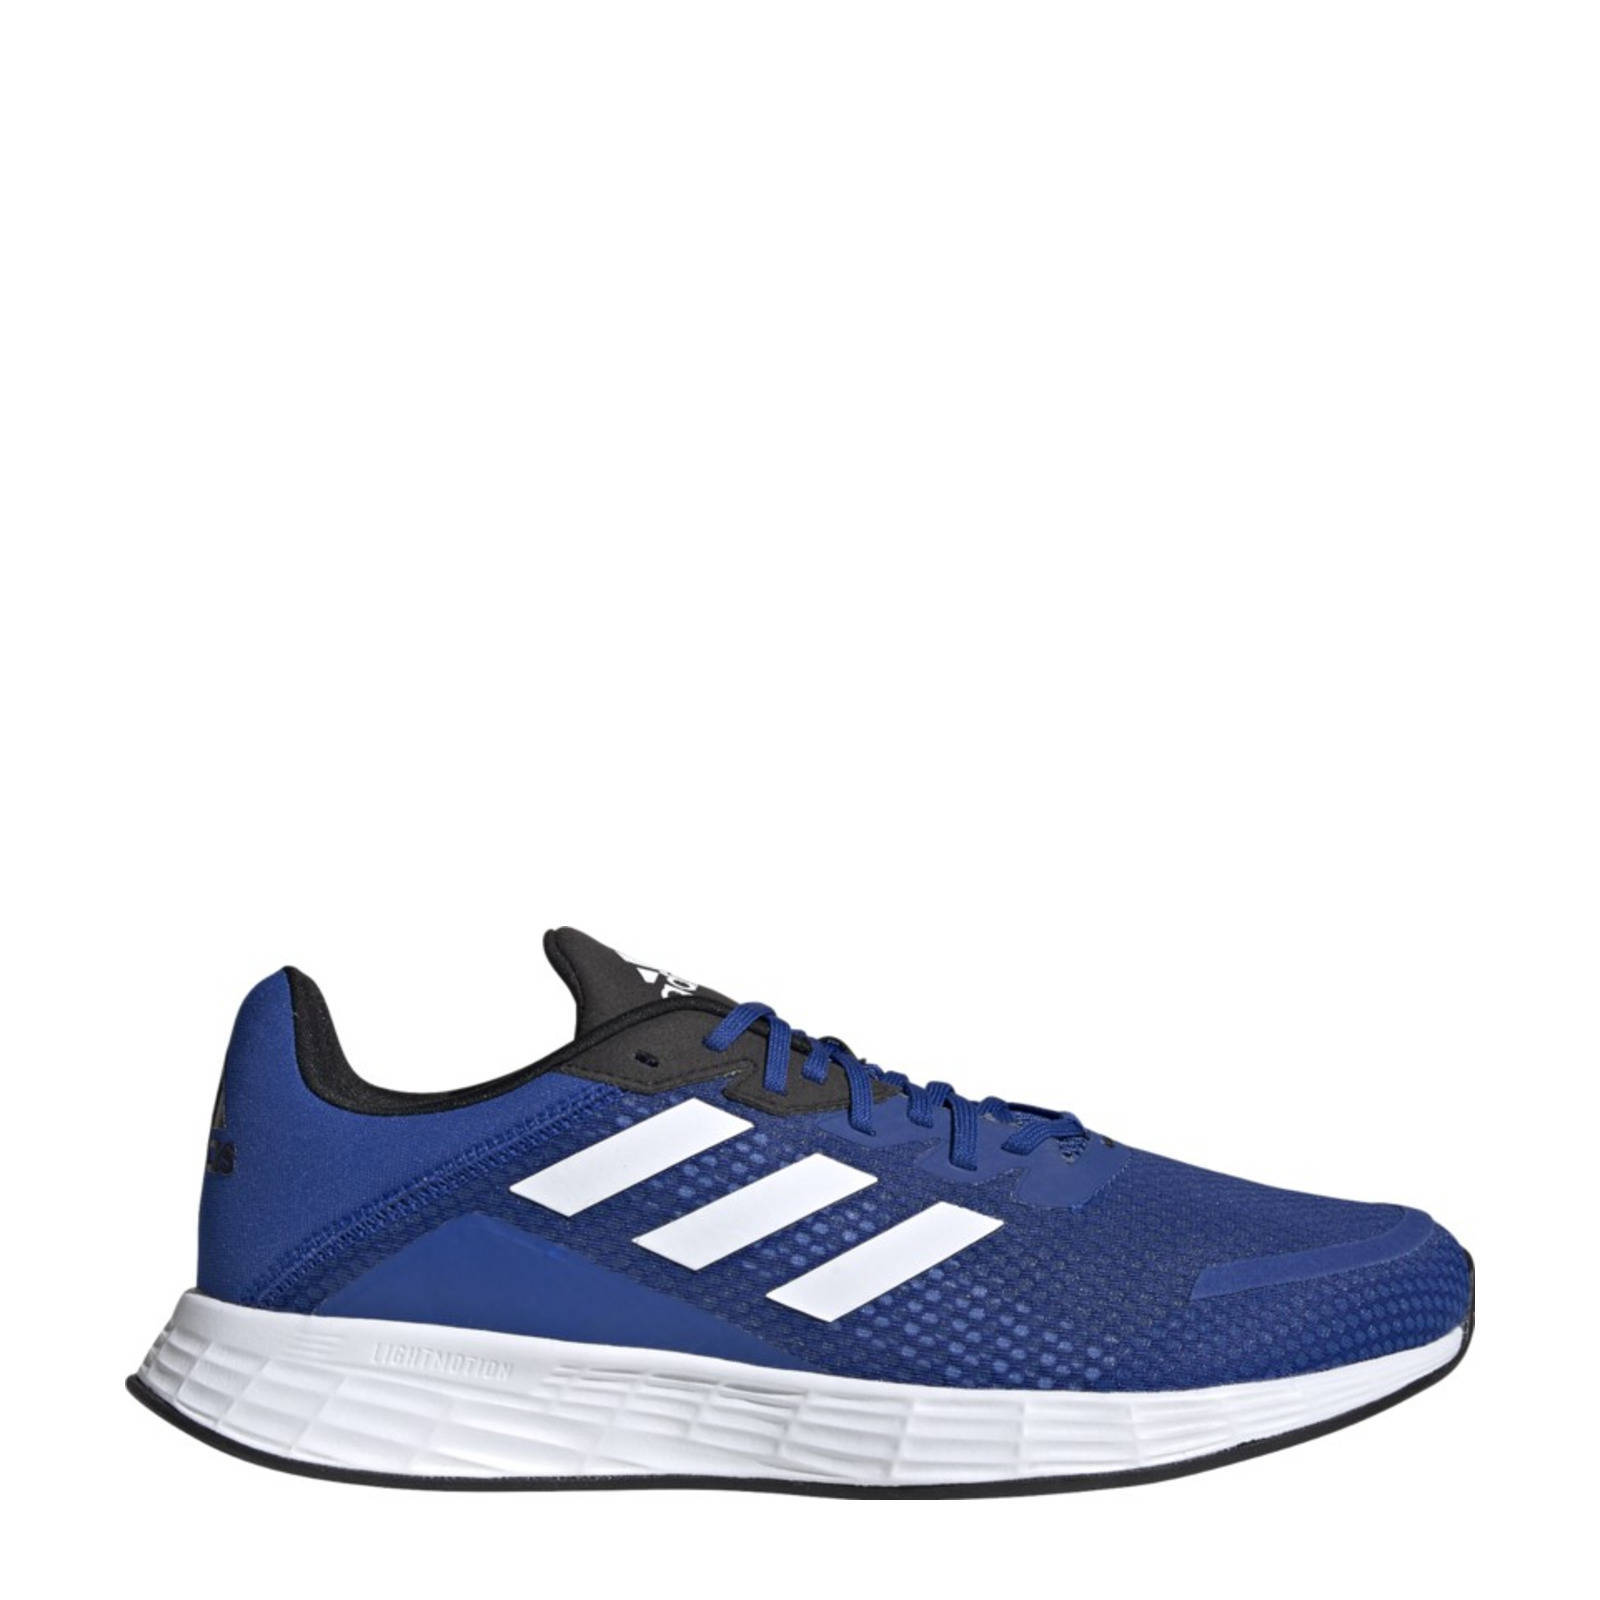 Adidas Performance Duramo Sl Classic hardloopschoenen kobaltblauw/wit/zwart online kopen